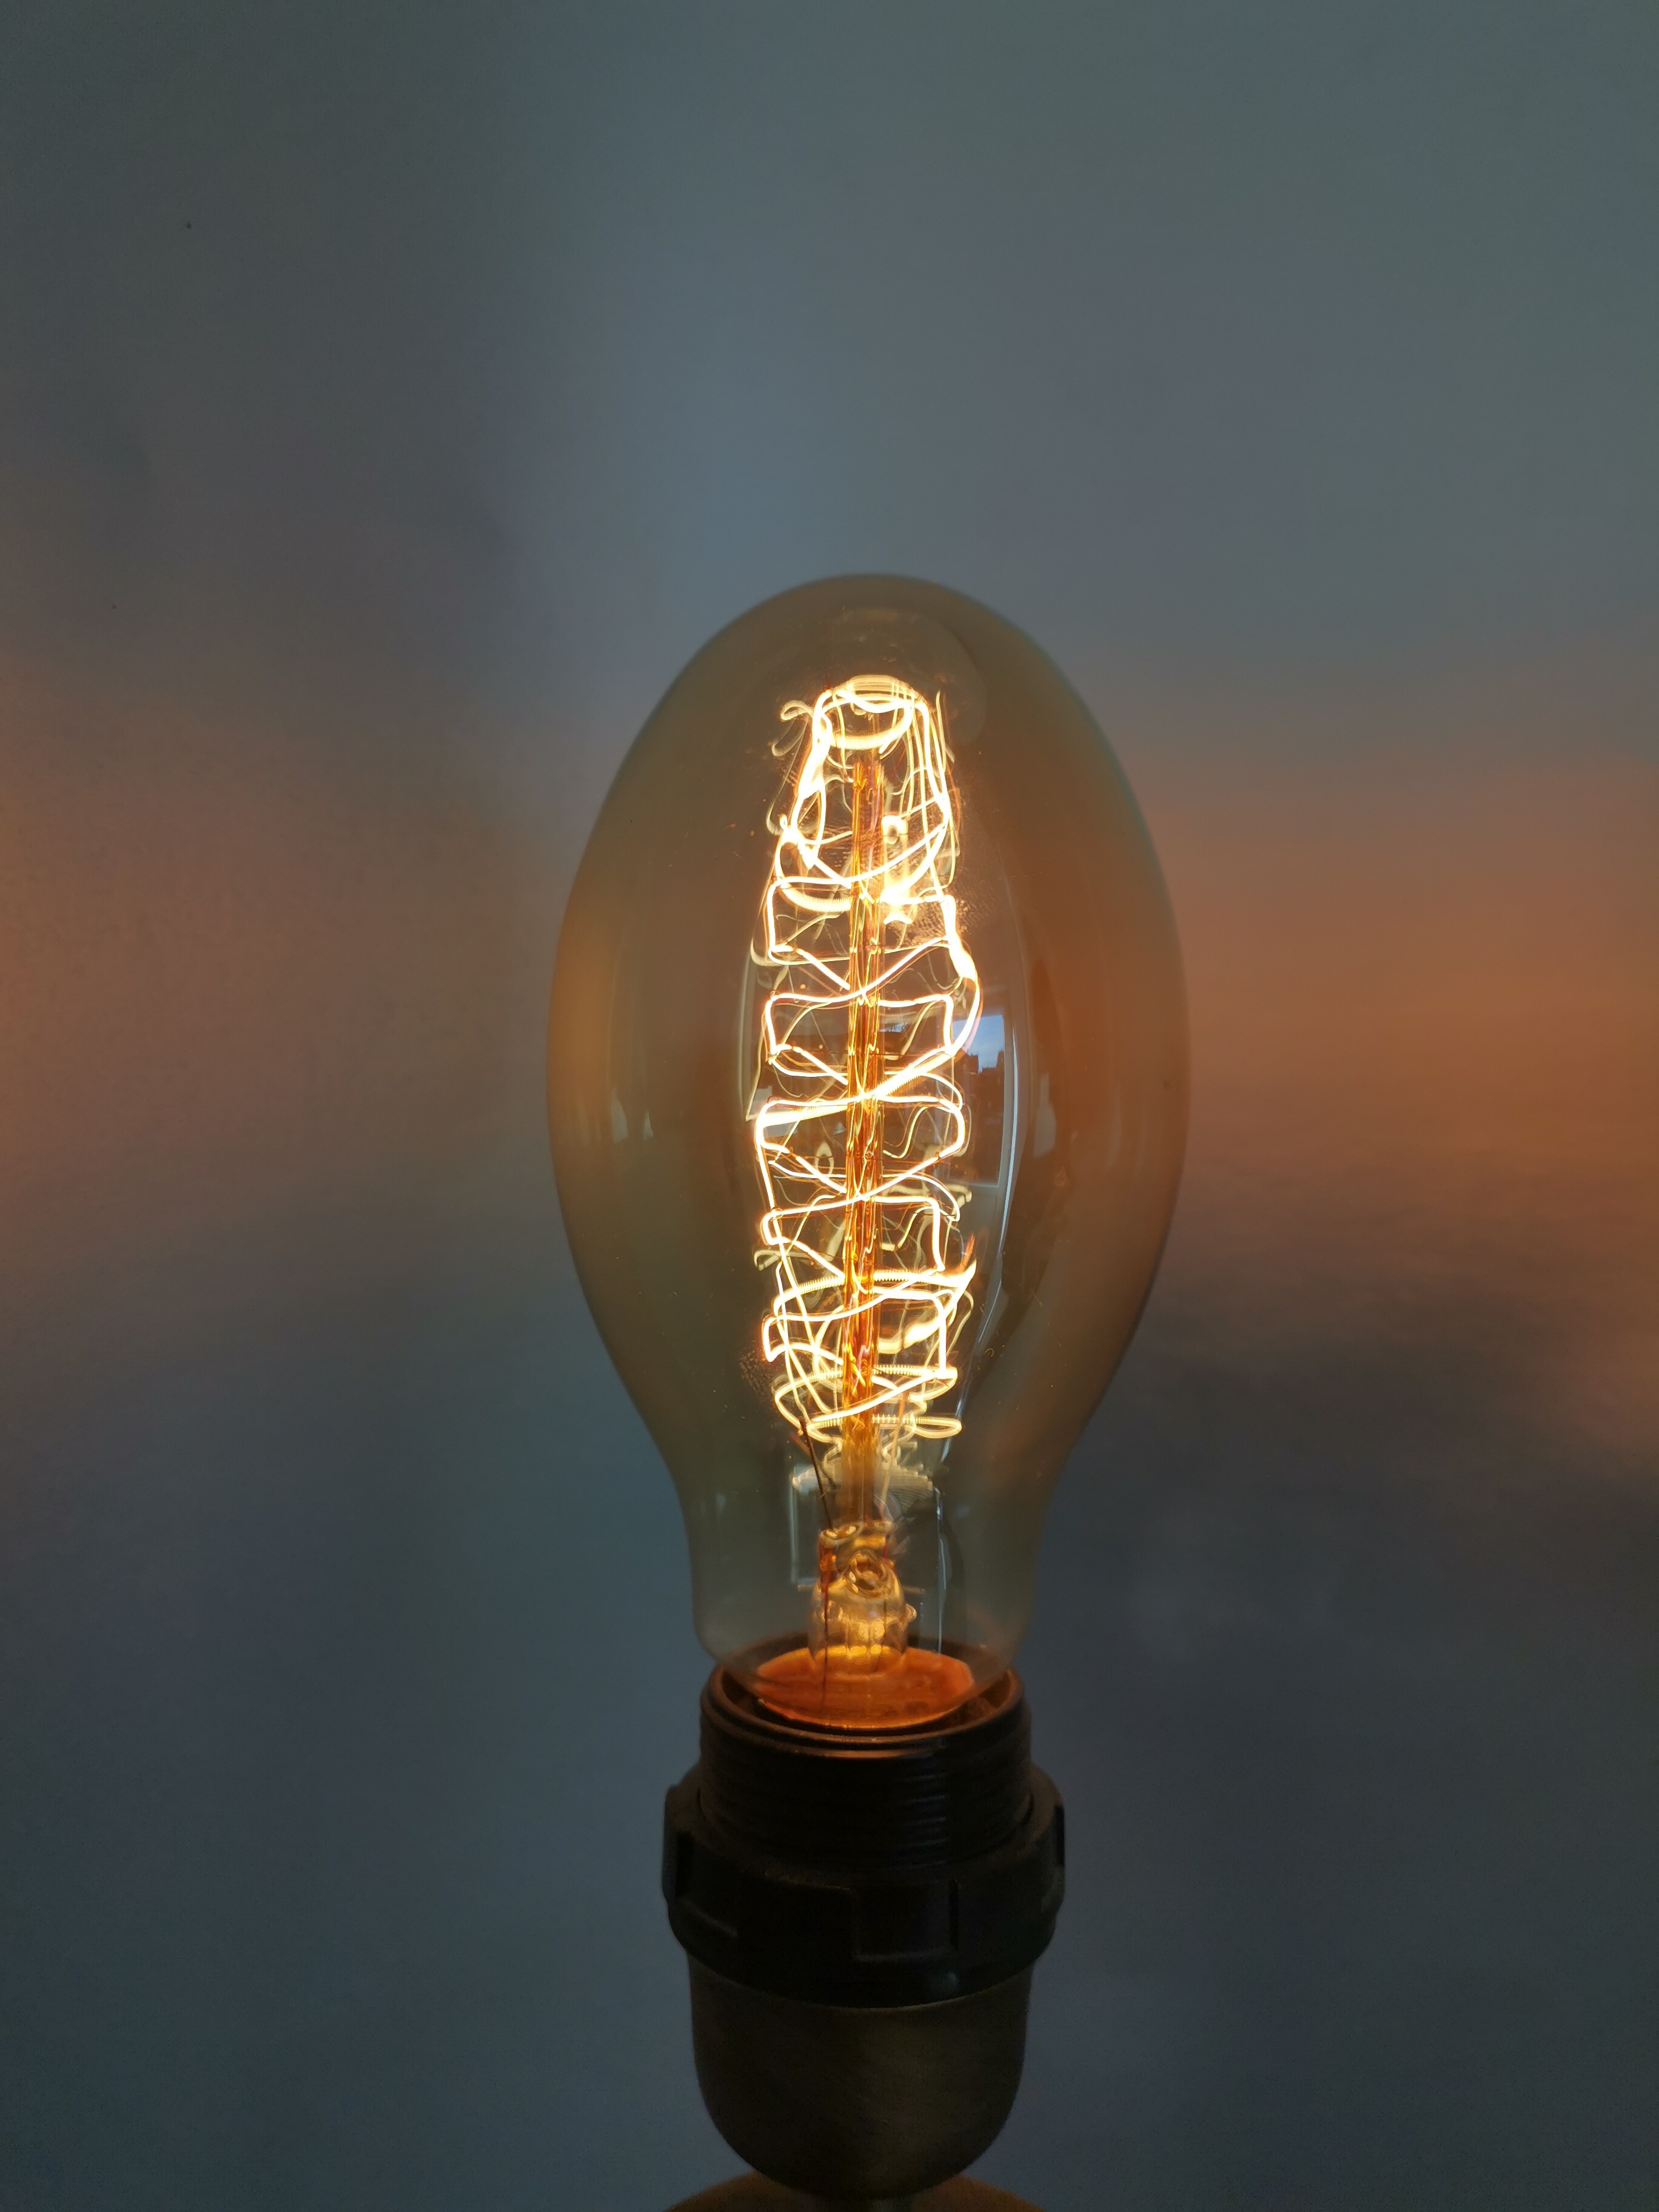 Edison vintage kooldraadlamp  KEGEL E27 40W dimbaar